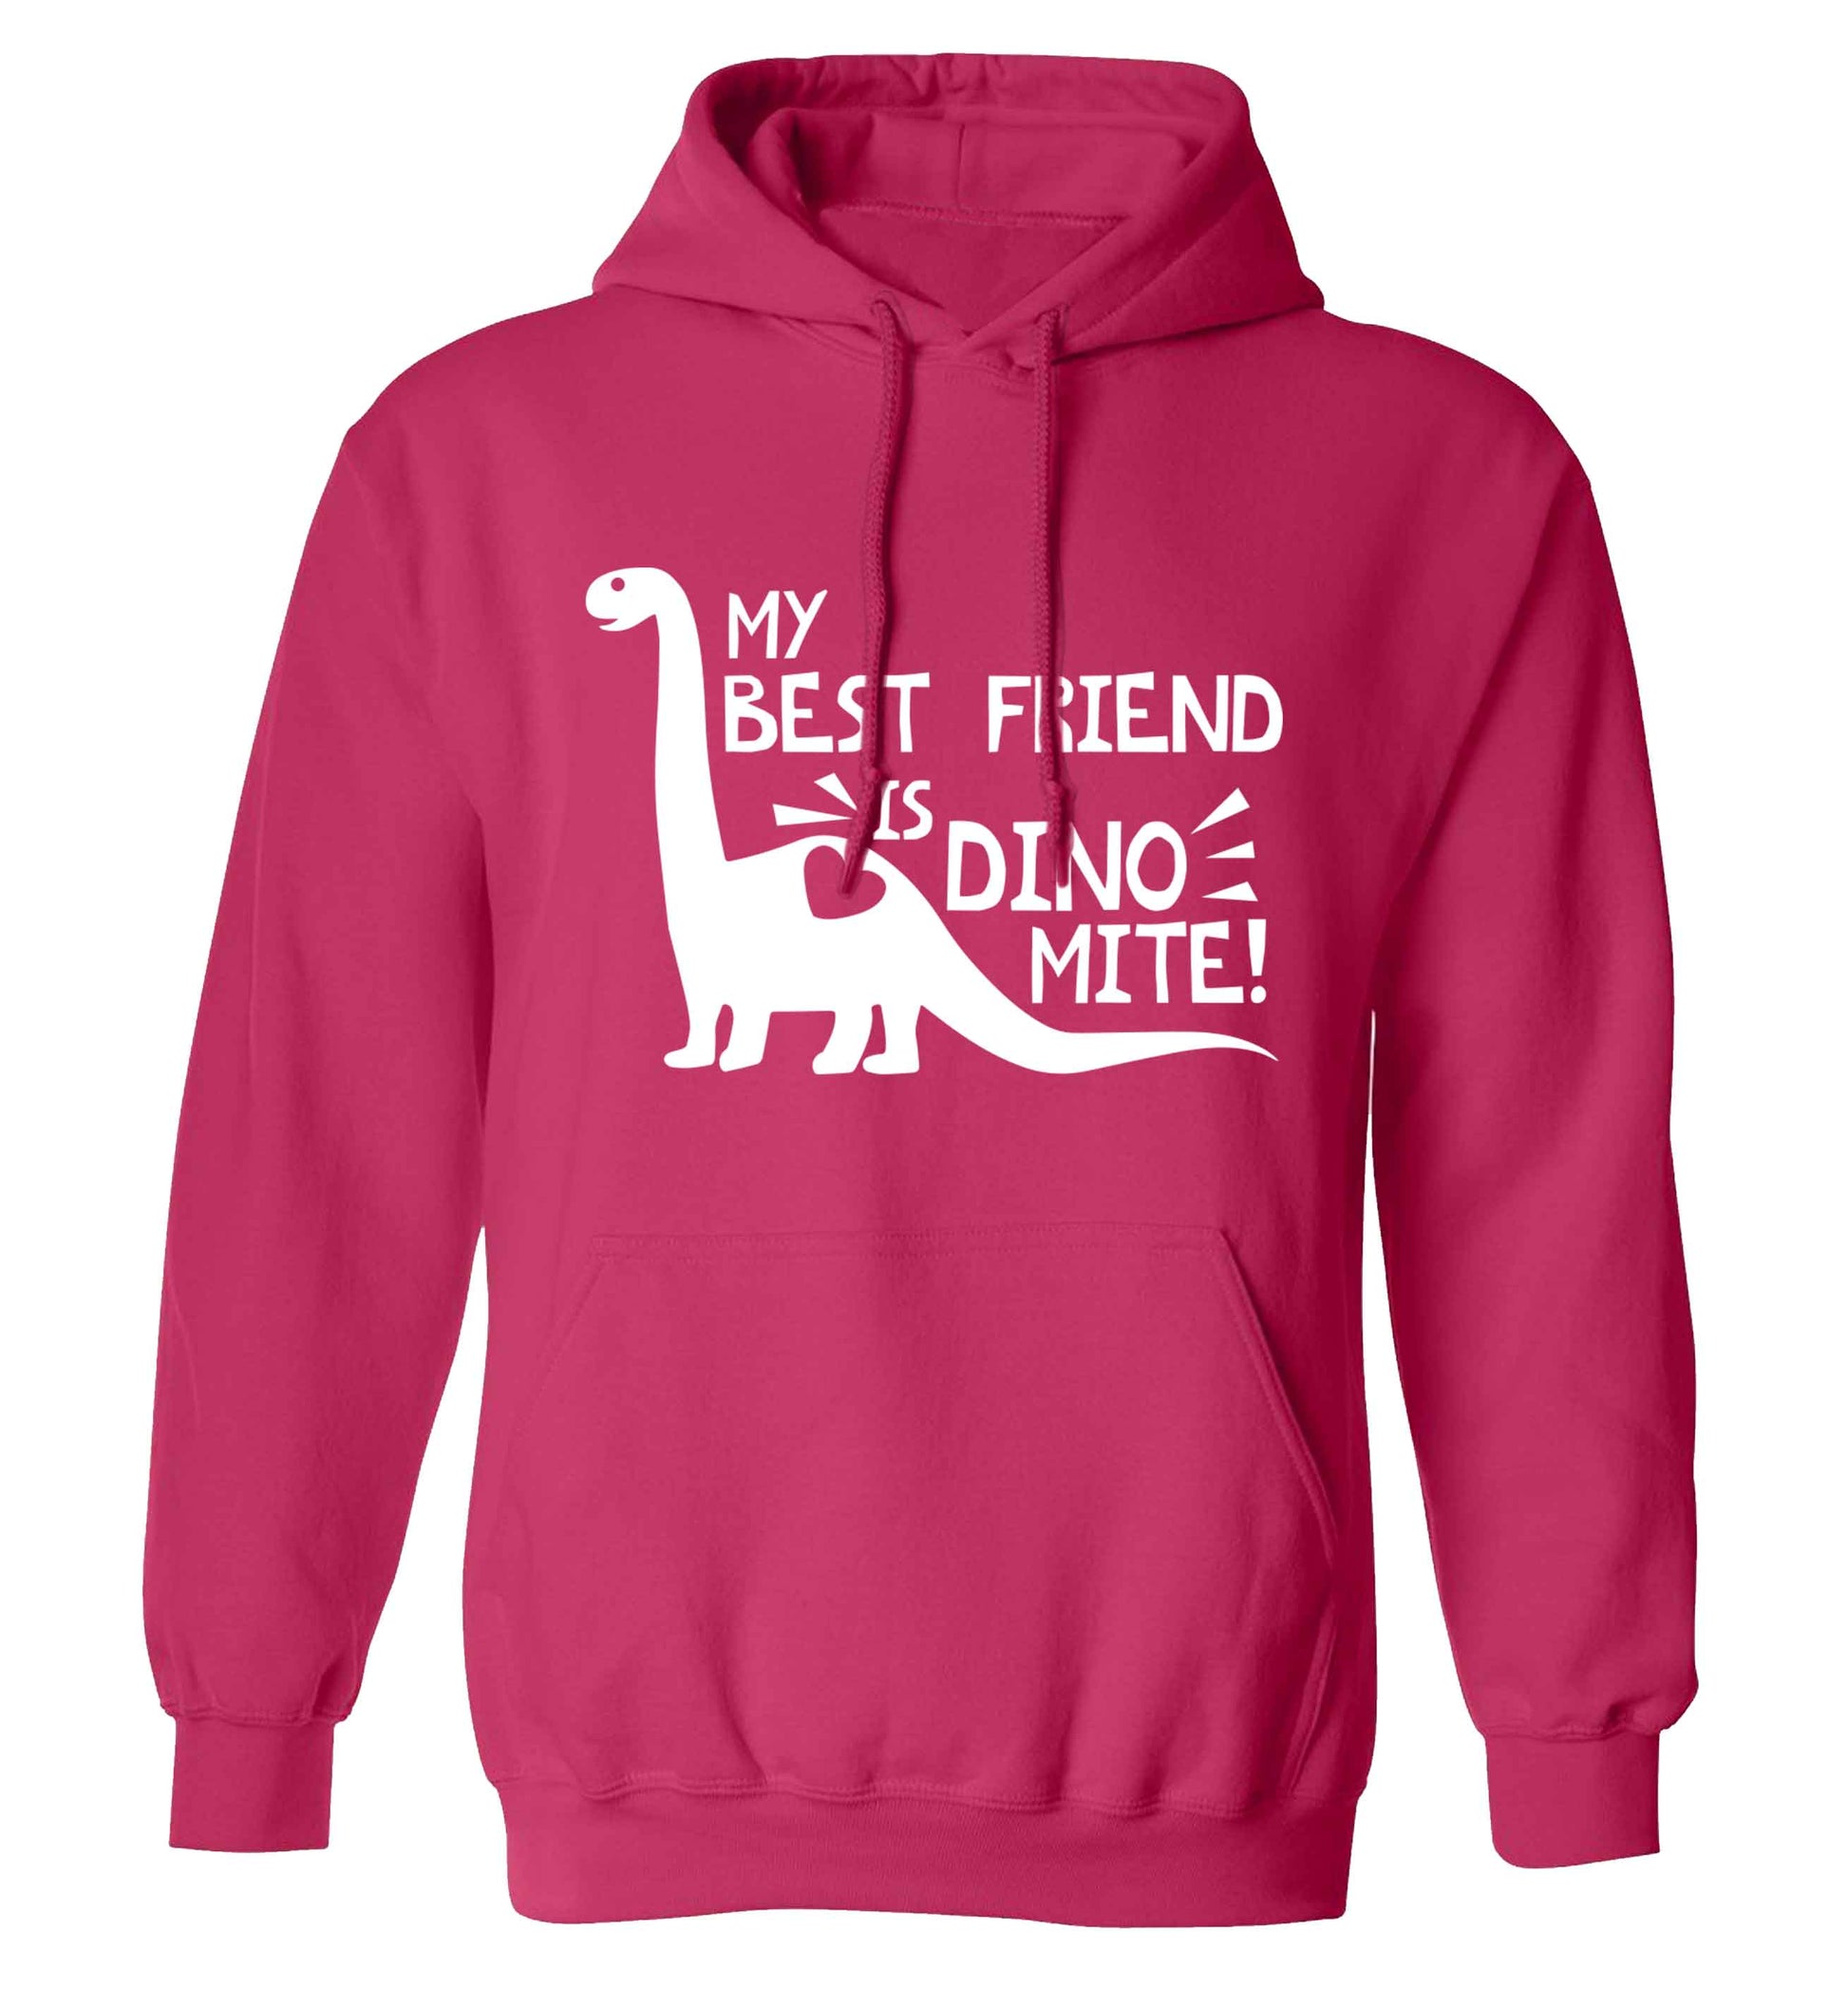 My best friend is dinomite! adults unisex pink hoodie 2XL